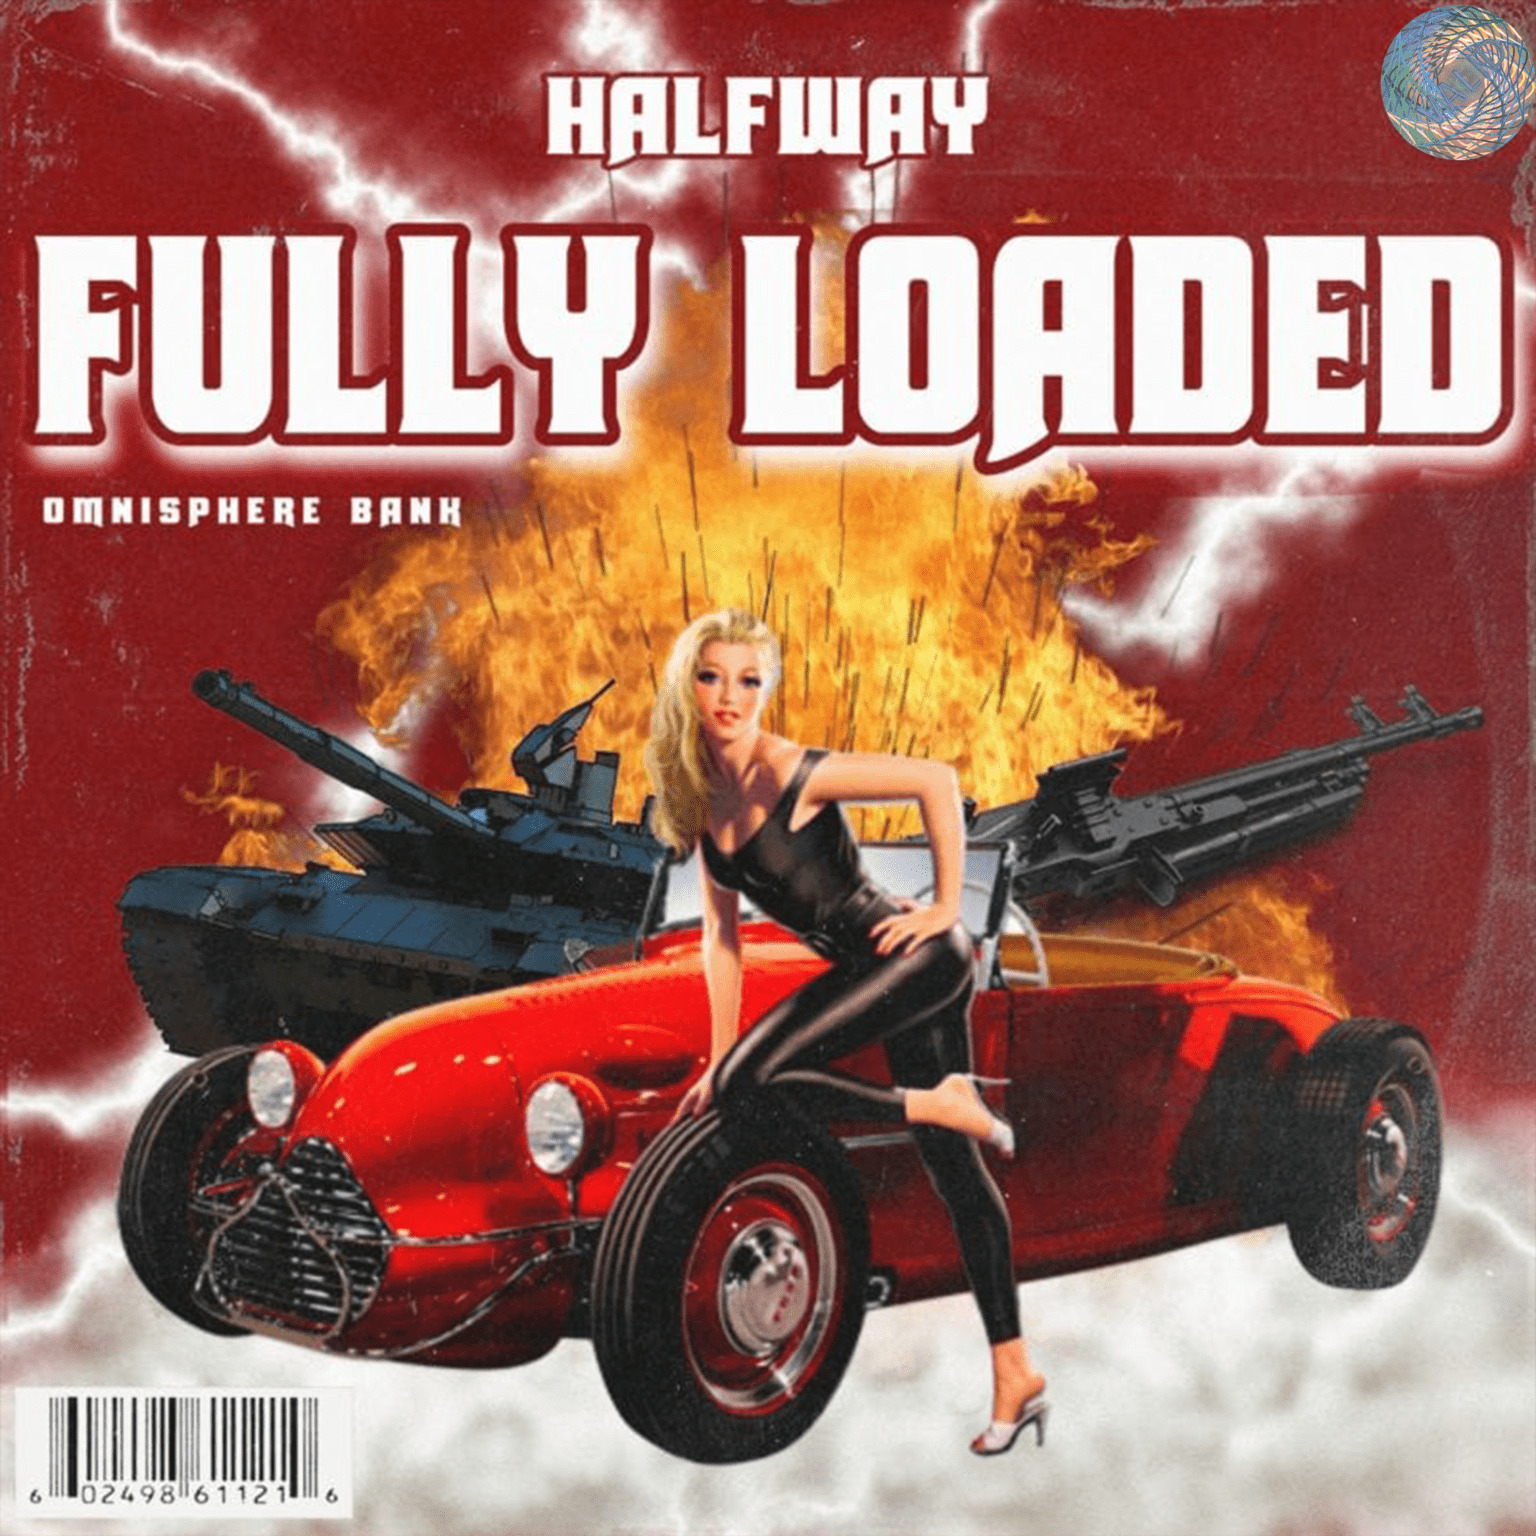 Halfway - Fully Loaded Vol. 1 (Omnisphere Bank)